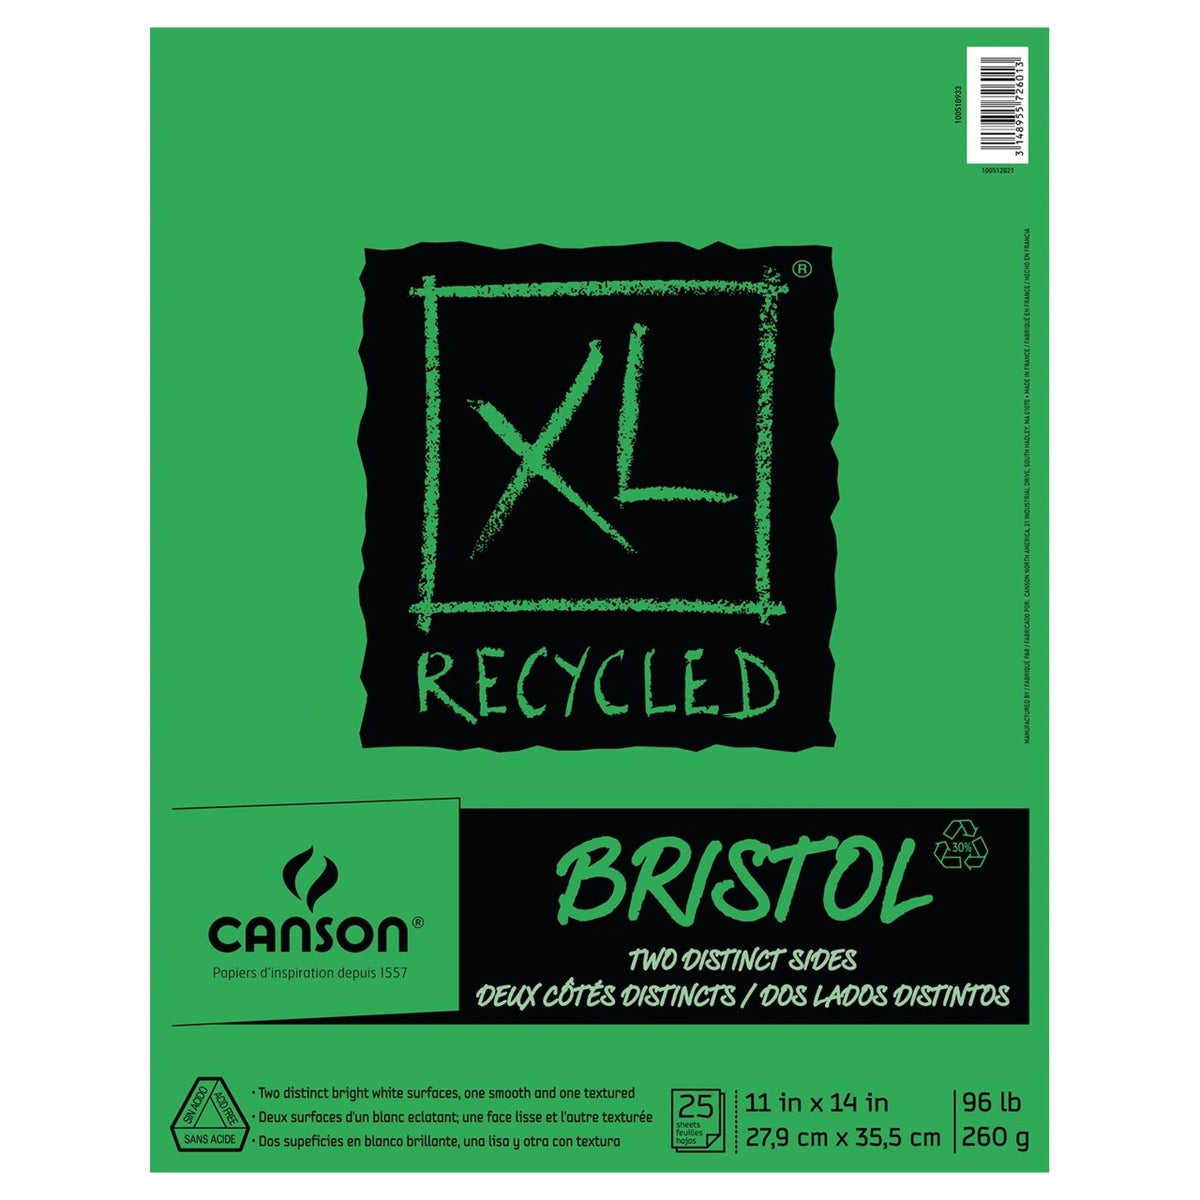 Carbon paper for textile - 10 reusable sheets - A4